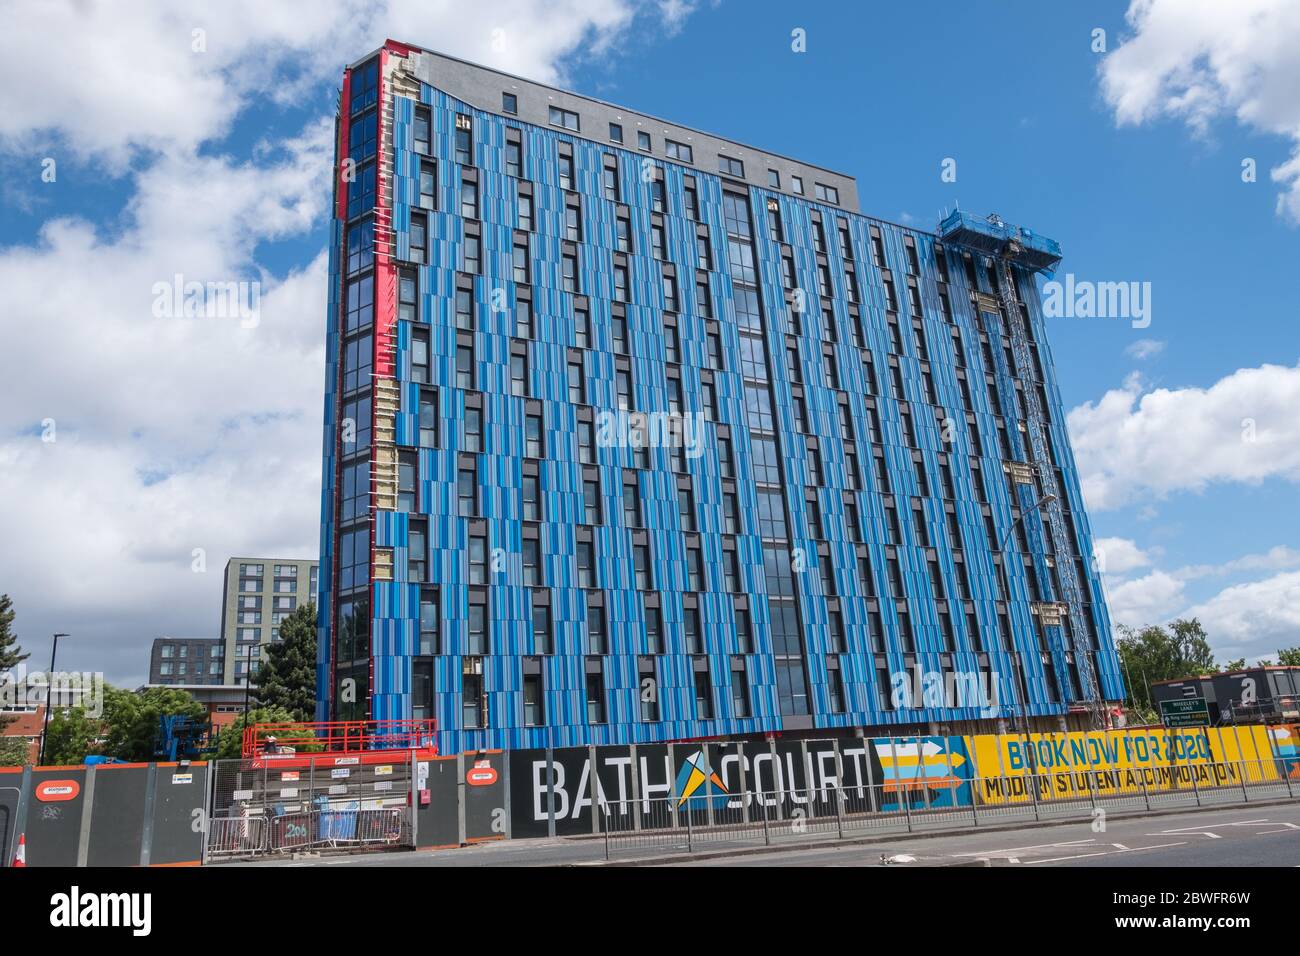 Bath court, un grand nouveau bâtiment d'hébergement étudiant en construction sur Islington Row Middleway près du centre-ville de Birmingham Banque D'Images